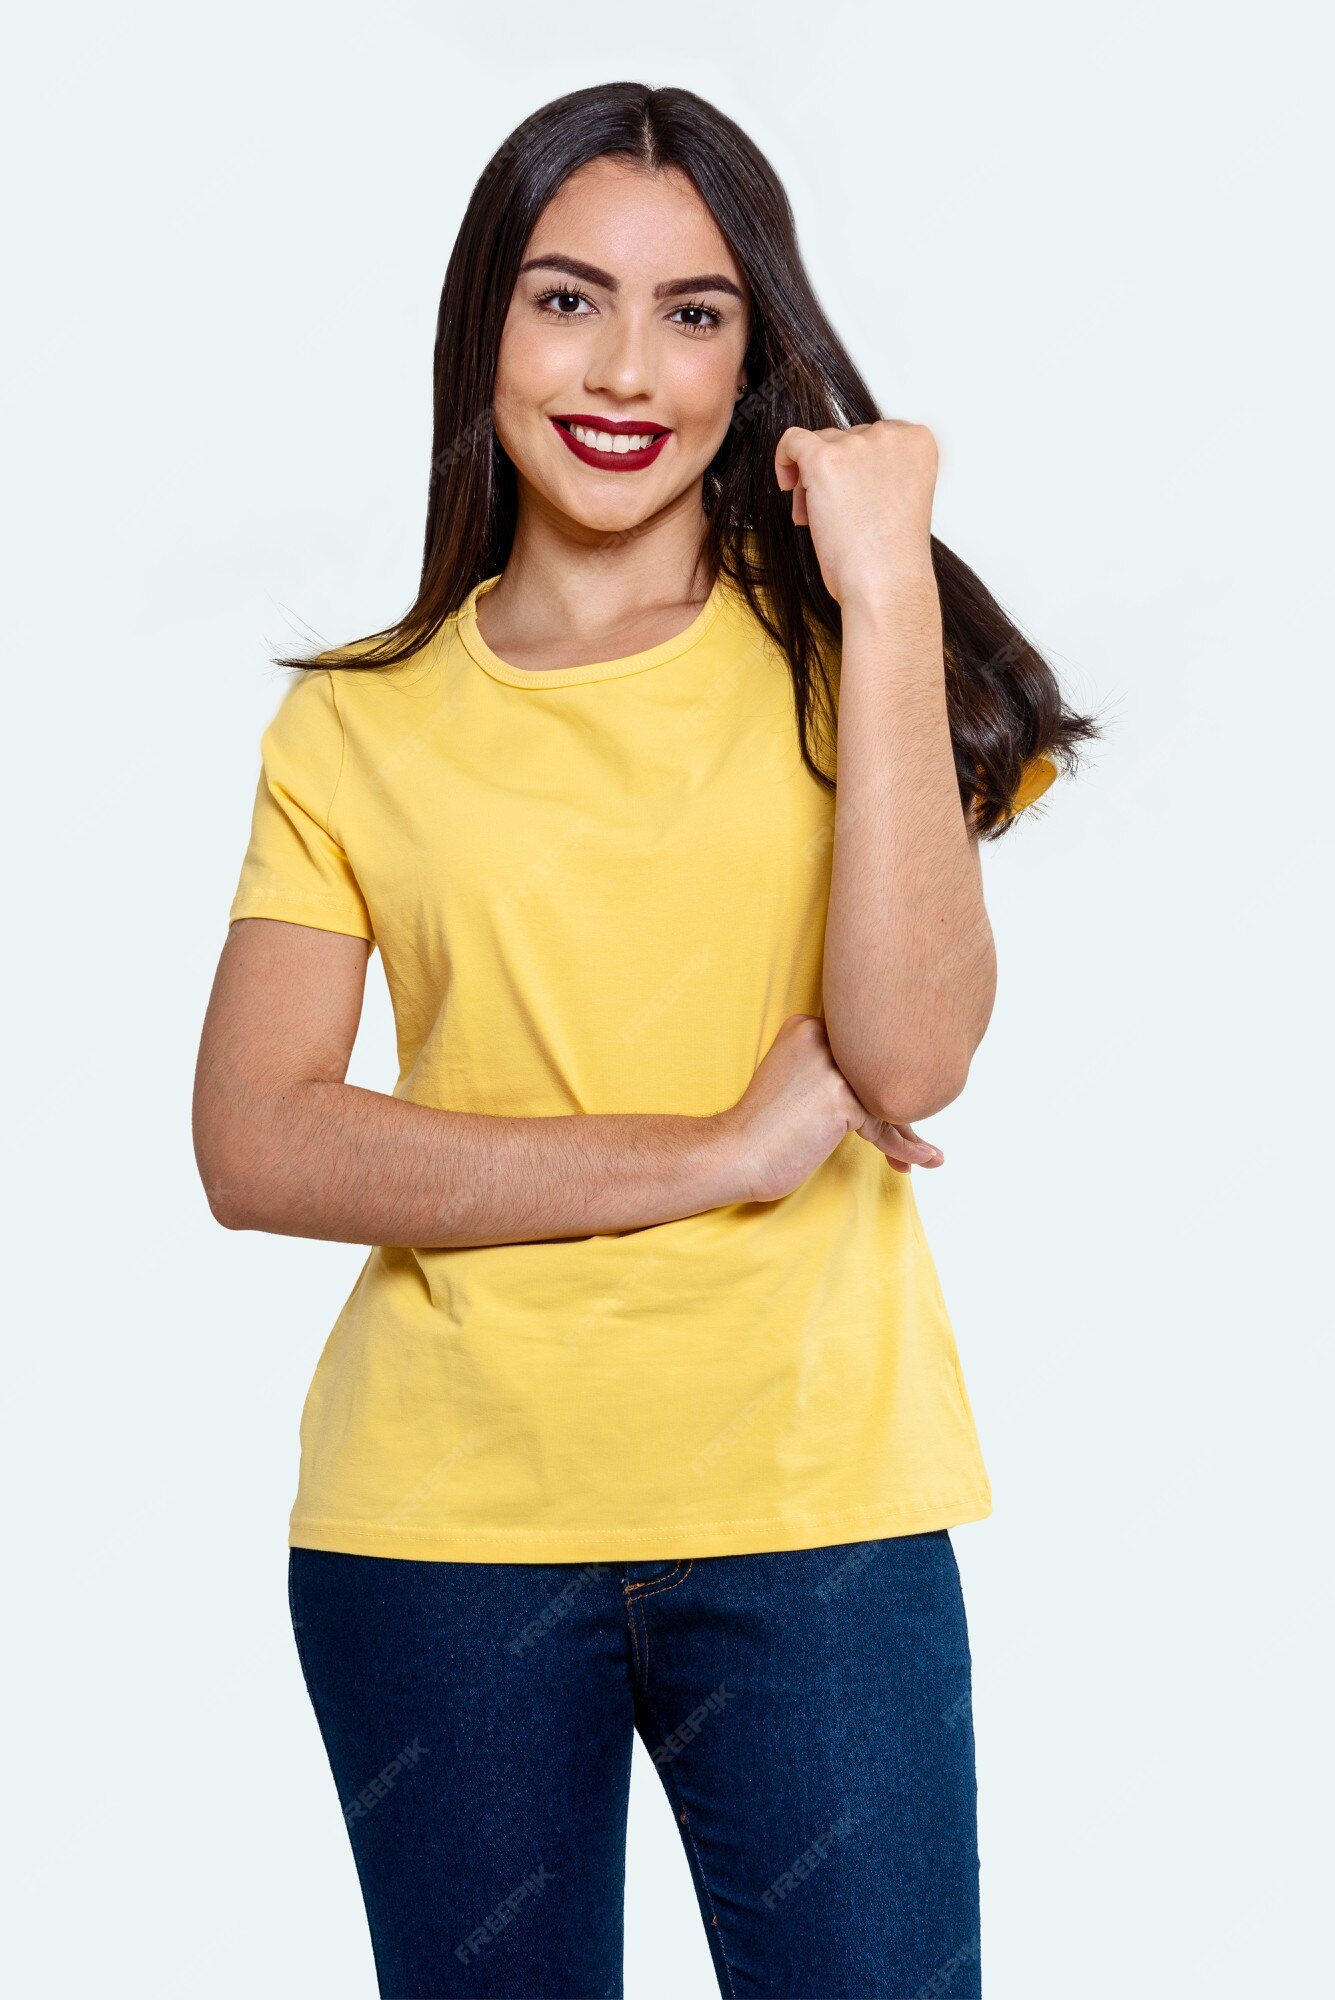 legación Metropolitano Plantando árboles Fotografía de estudio de mujer brasileña en elegante blusa amarilla y  sonriente, aislado sobre fondo blanco. modelo de mujer hermosa con fondo  blanco. | Foto Premium